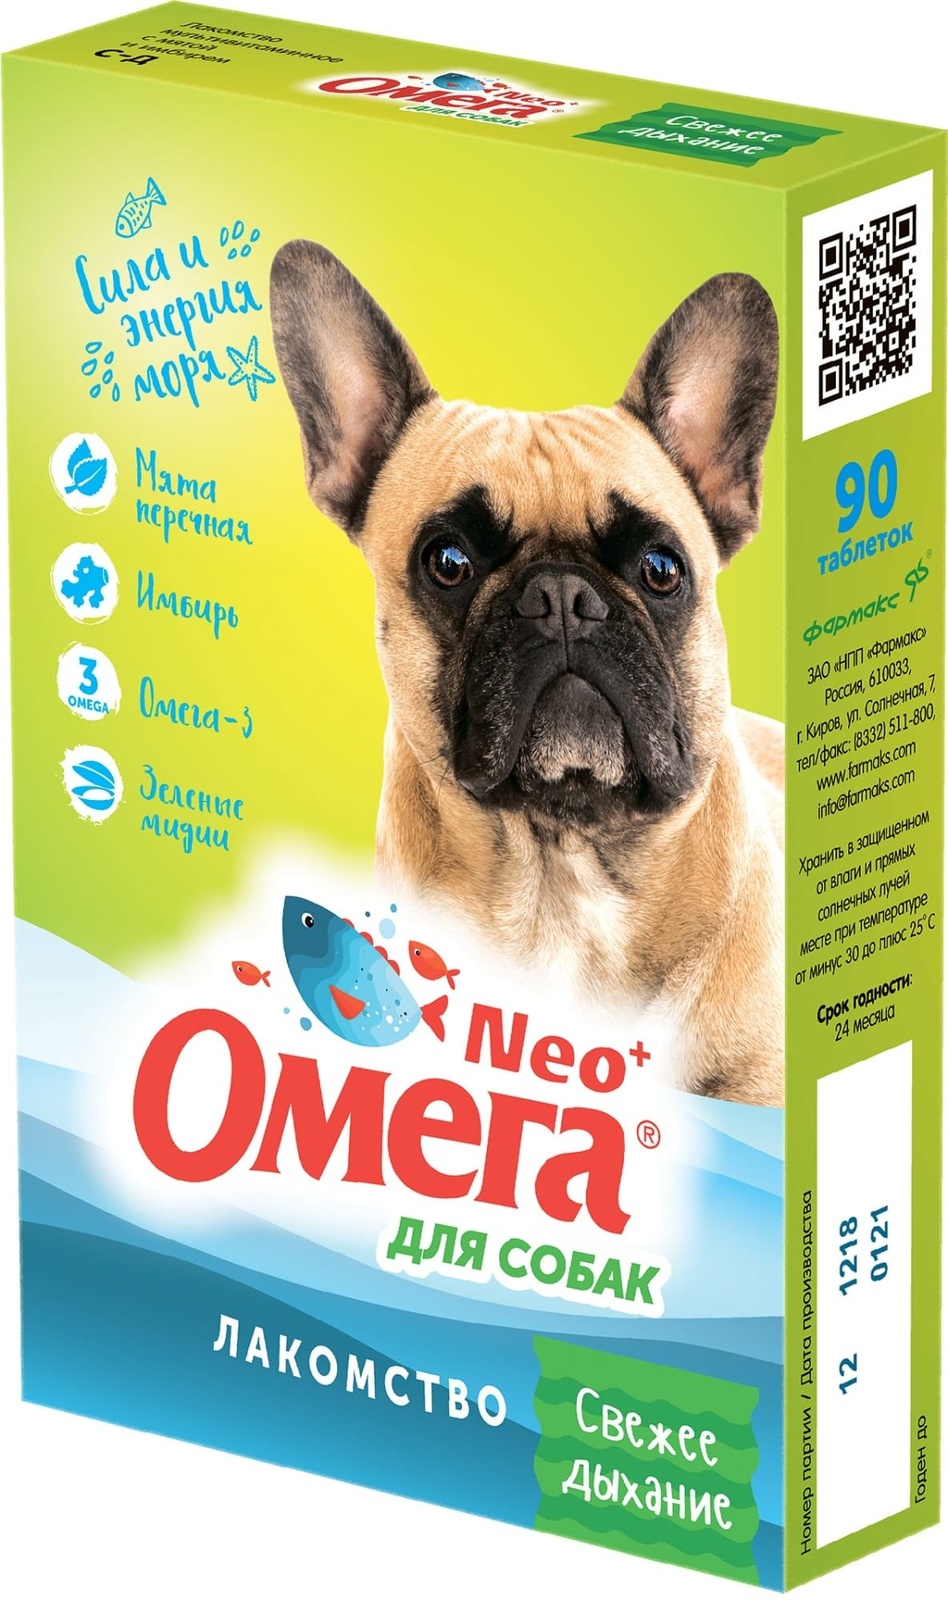 Фармакс Фармакс мультивитаминное лакомство Омега Neo+ Свежее дыхание  с мятой и имбирем для собак (60 г)